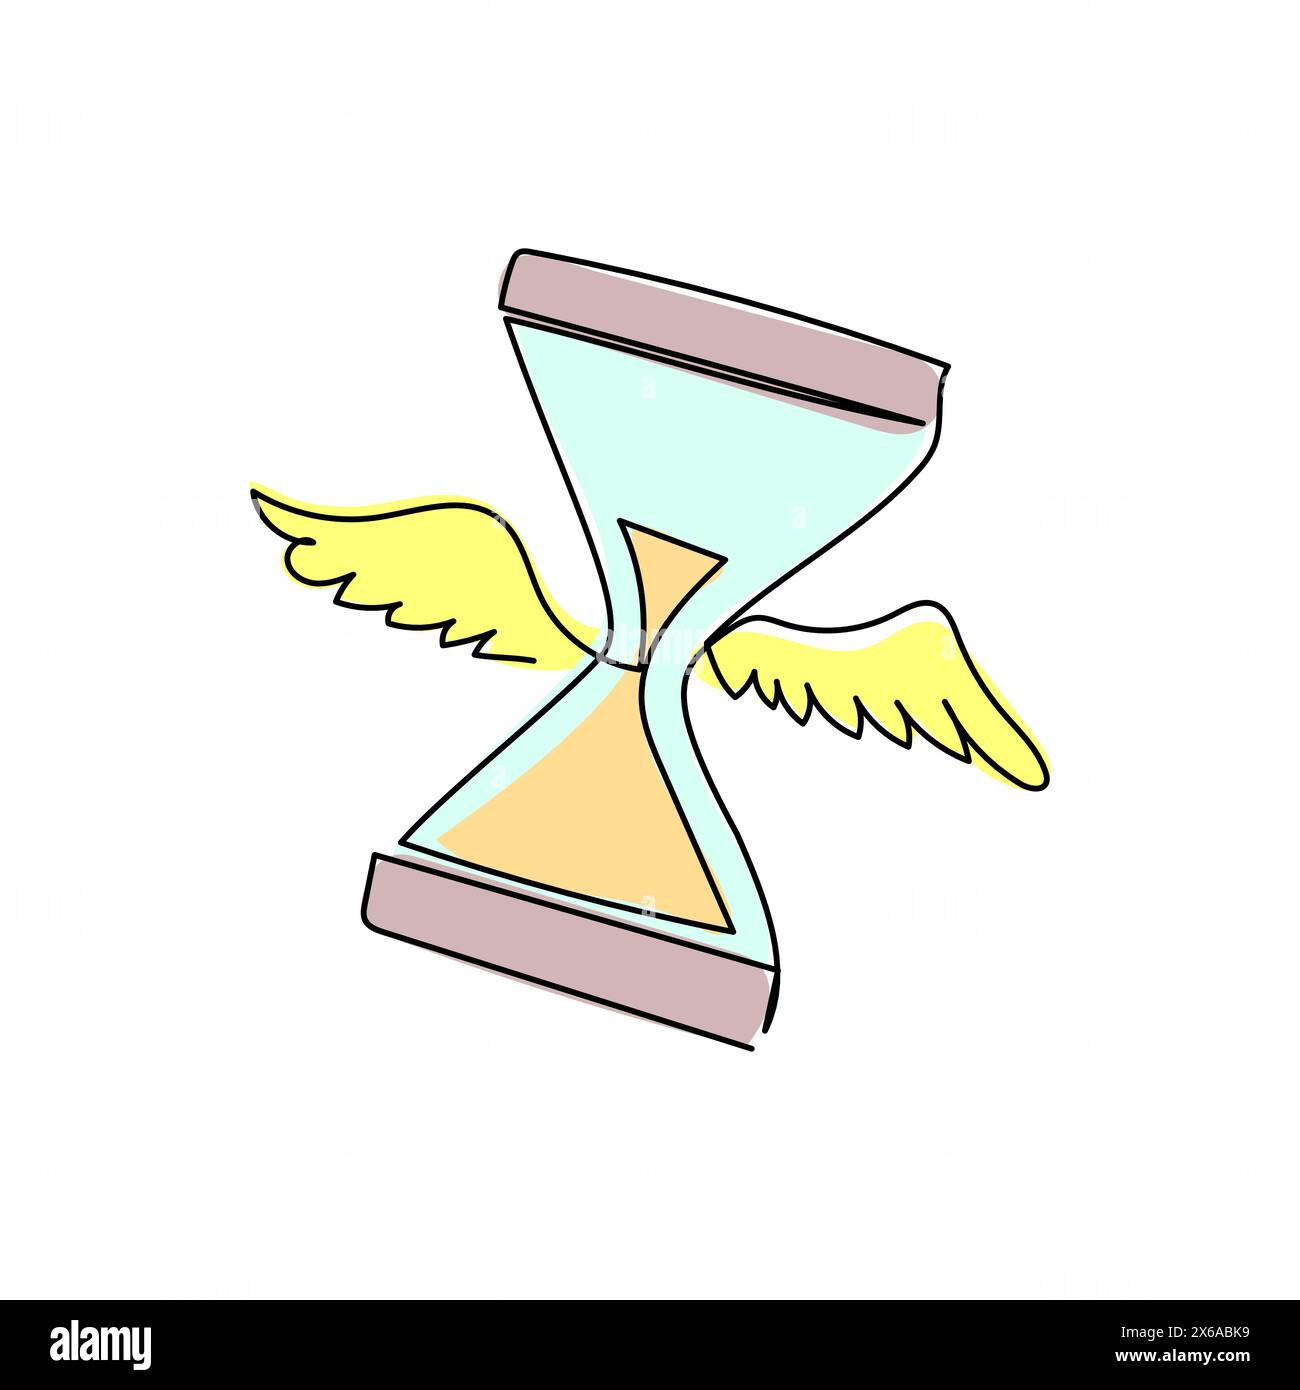 Einfache einzeilige Zeichnung fliegende Sanduhr mit Flügeln. Fliegende Sanduhr und Zeitlogosymbol. Geflügelte Sandglas-Deadline-Metapher. Moderne Anlage Stock Vektor